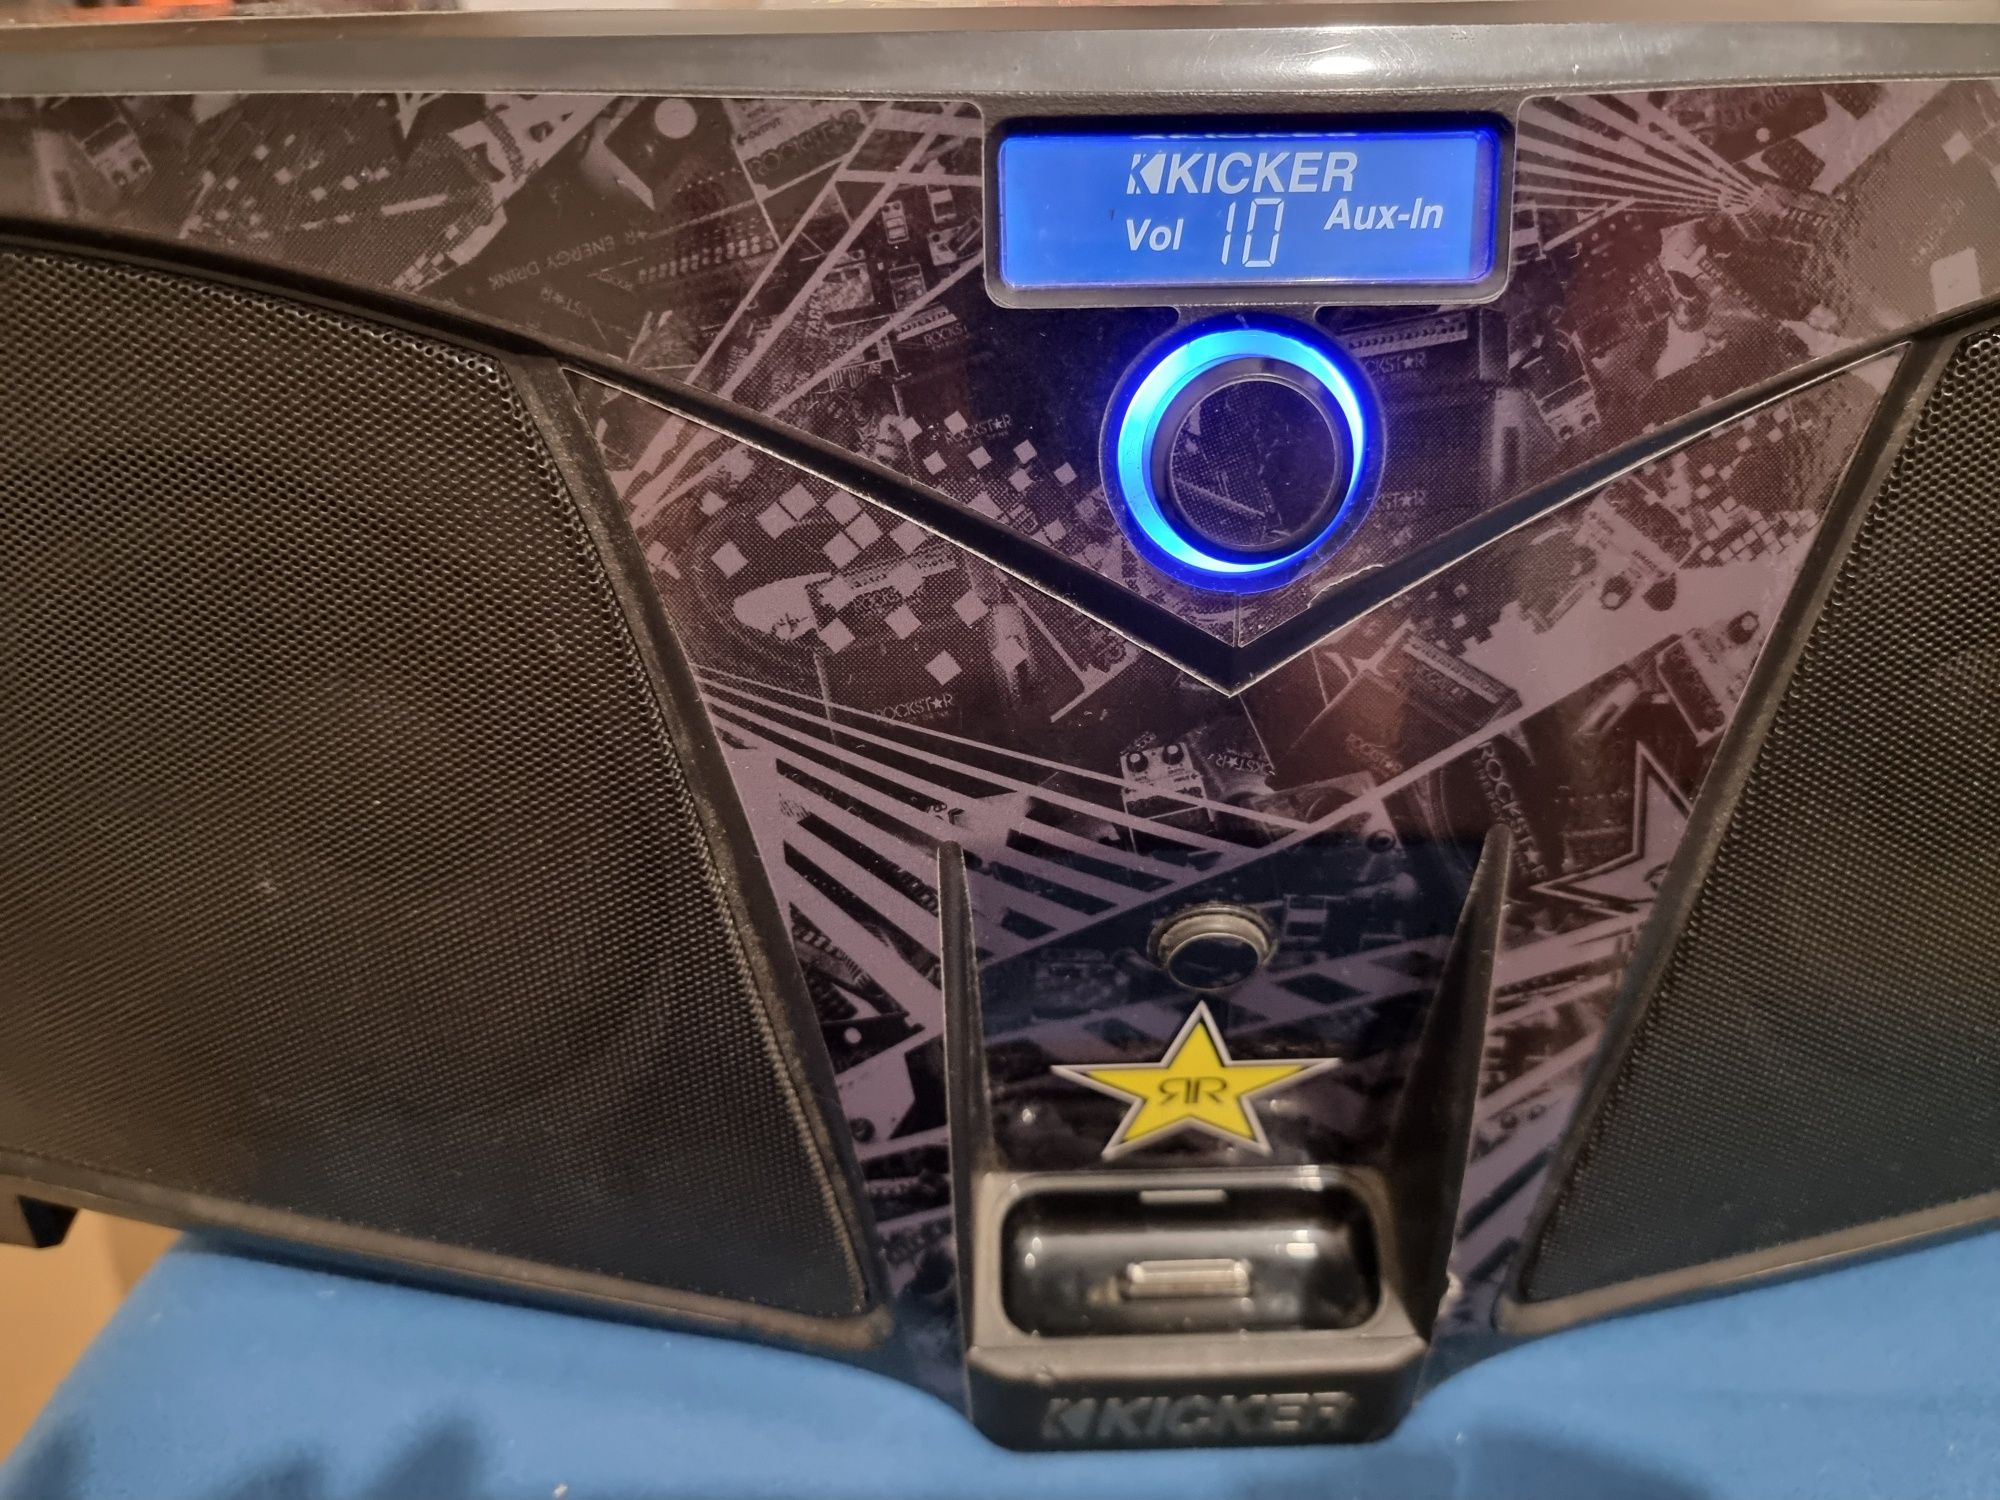 Kicker Rockstar głośnik Rockstar iK501 w Aux kolekcjonerski